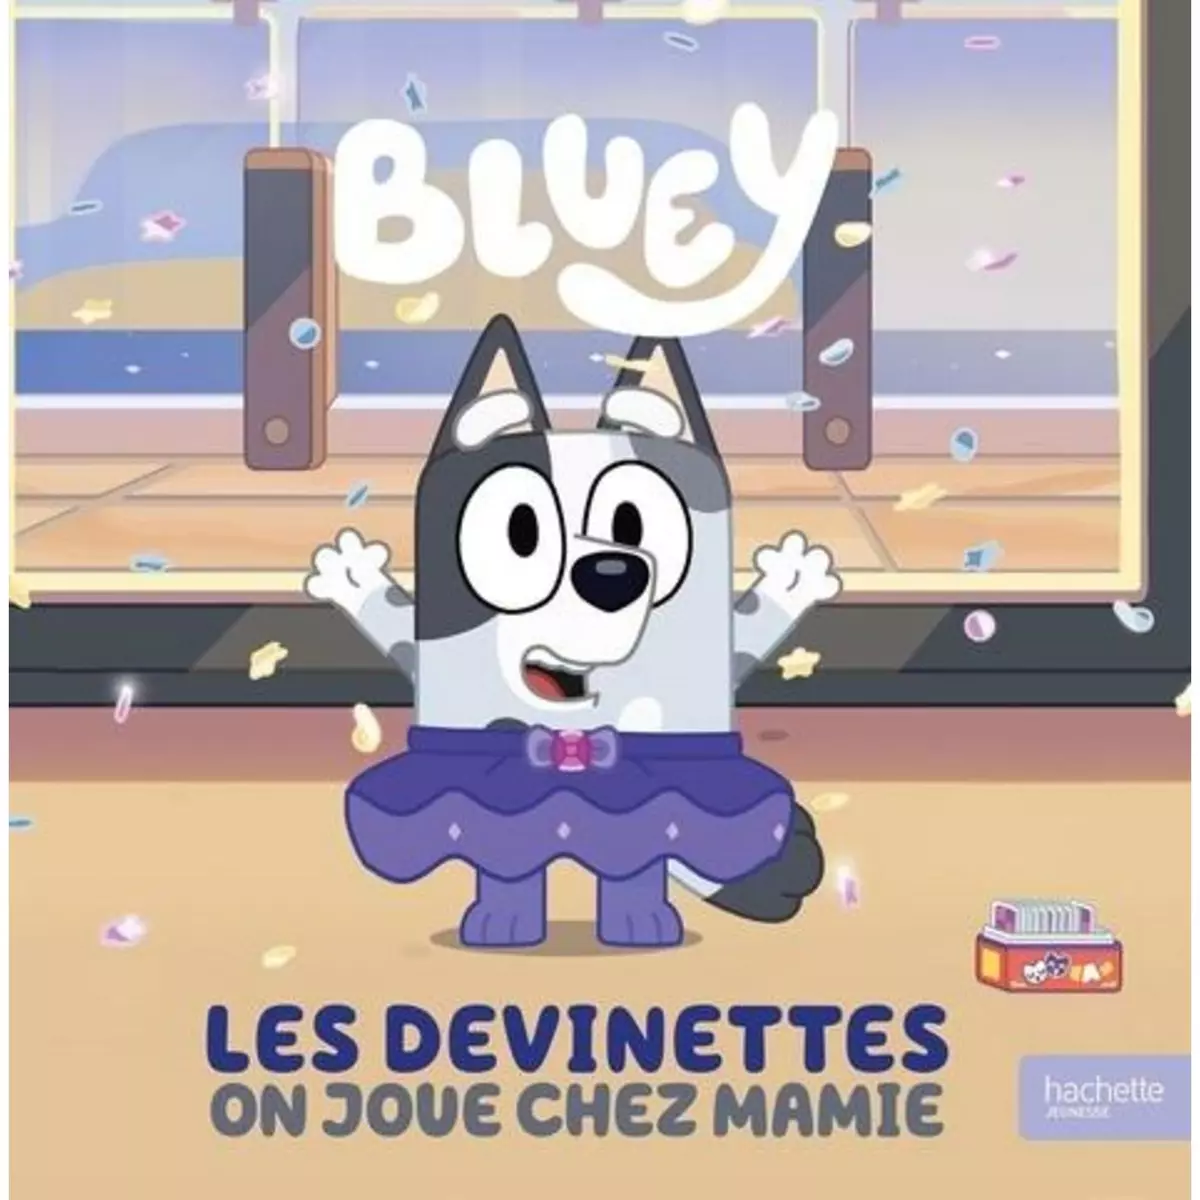  BLUEY : LES DEVINETTES. ON JOUE CHEZ MAMIE, Hachette Jeunesse